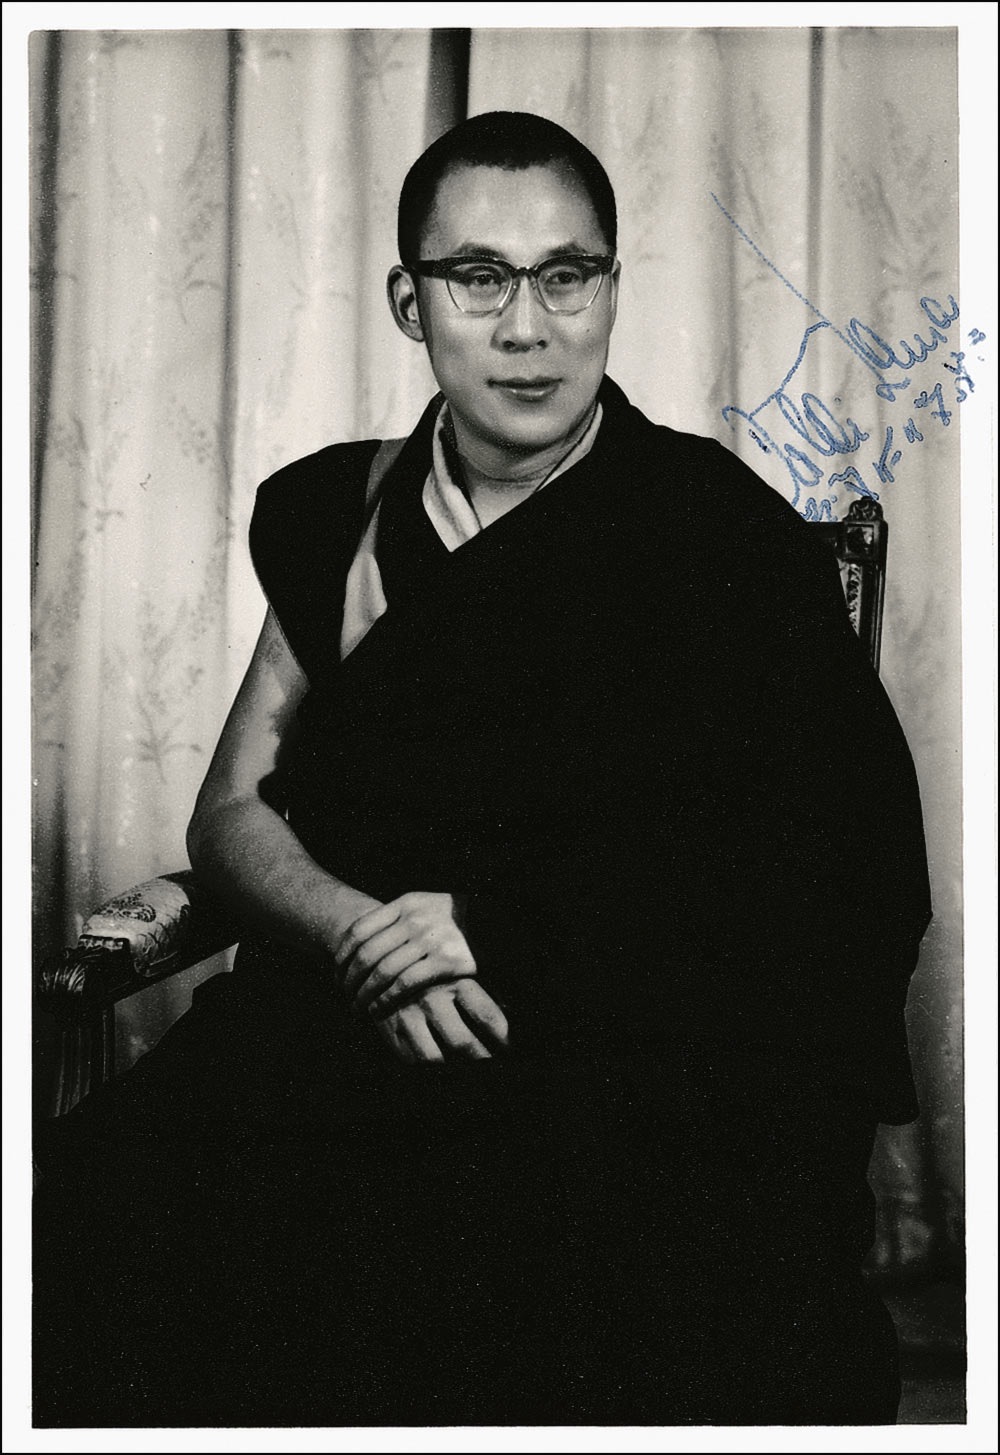 Lot #243 Dalai Lama